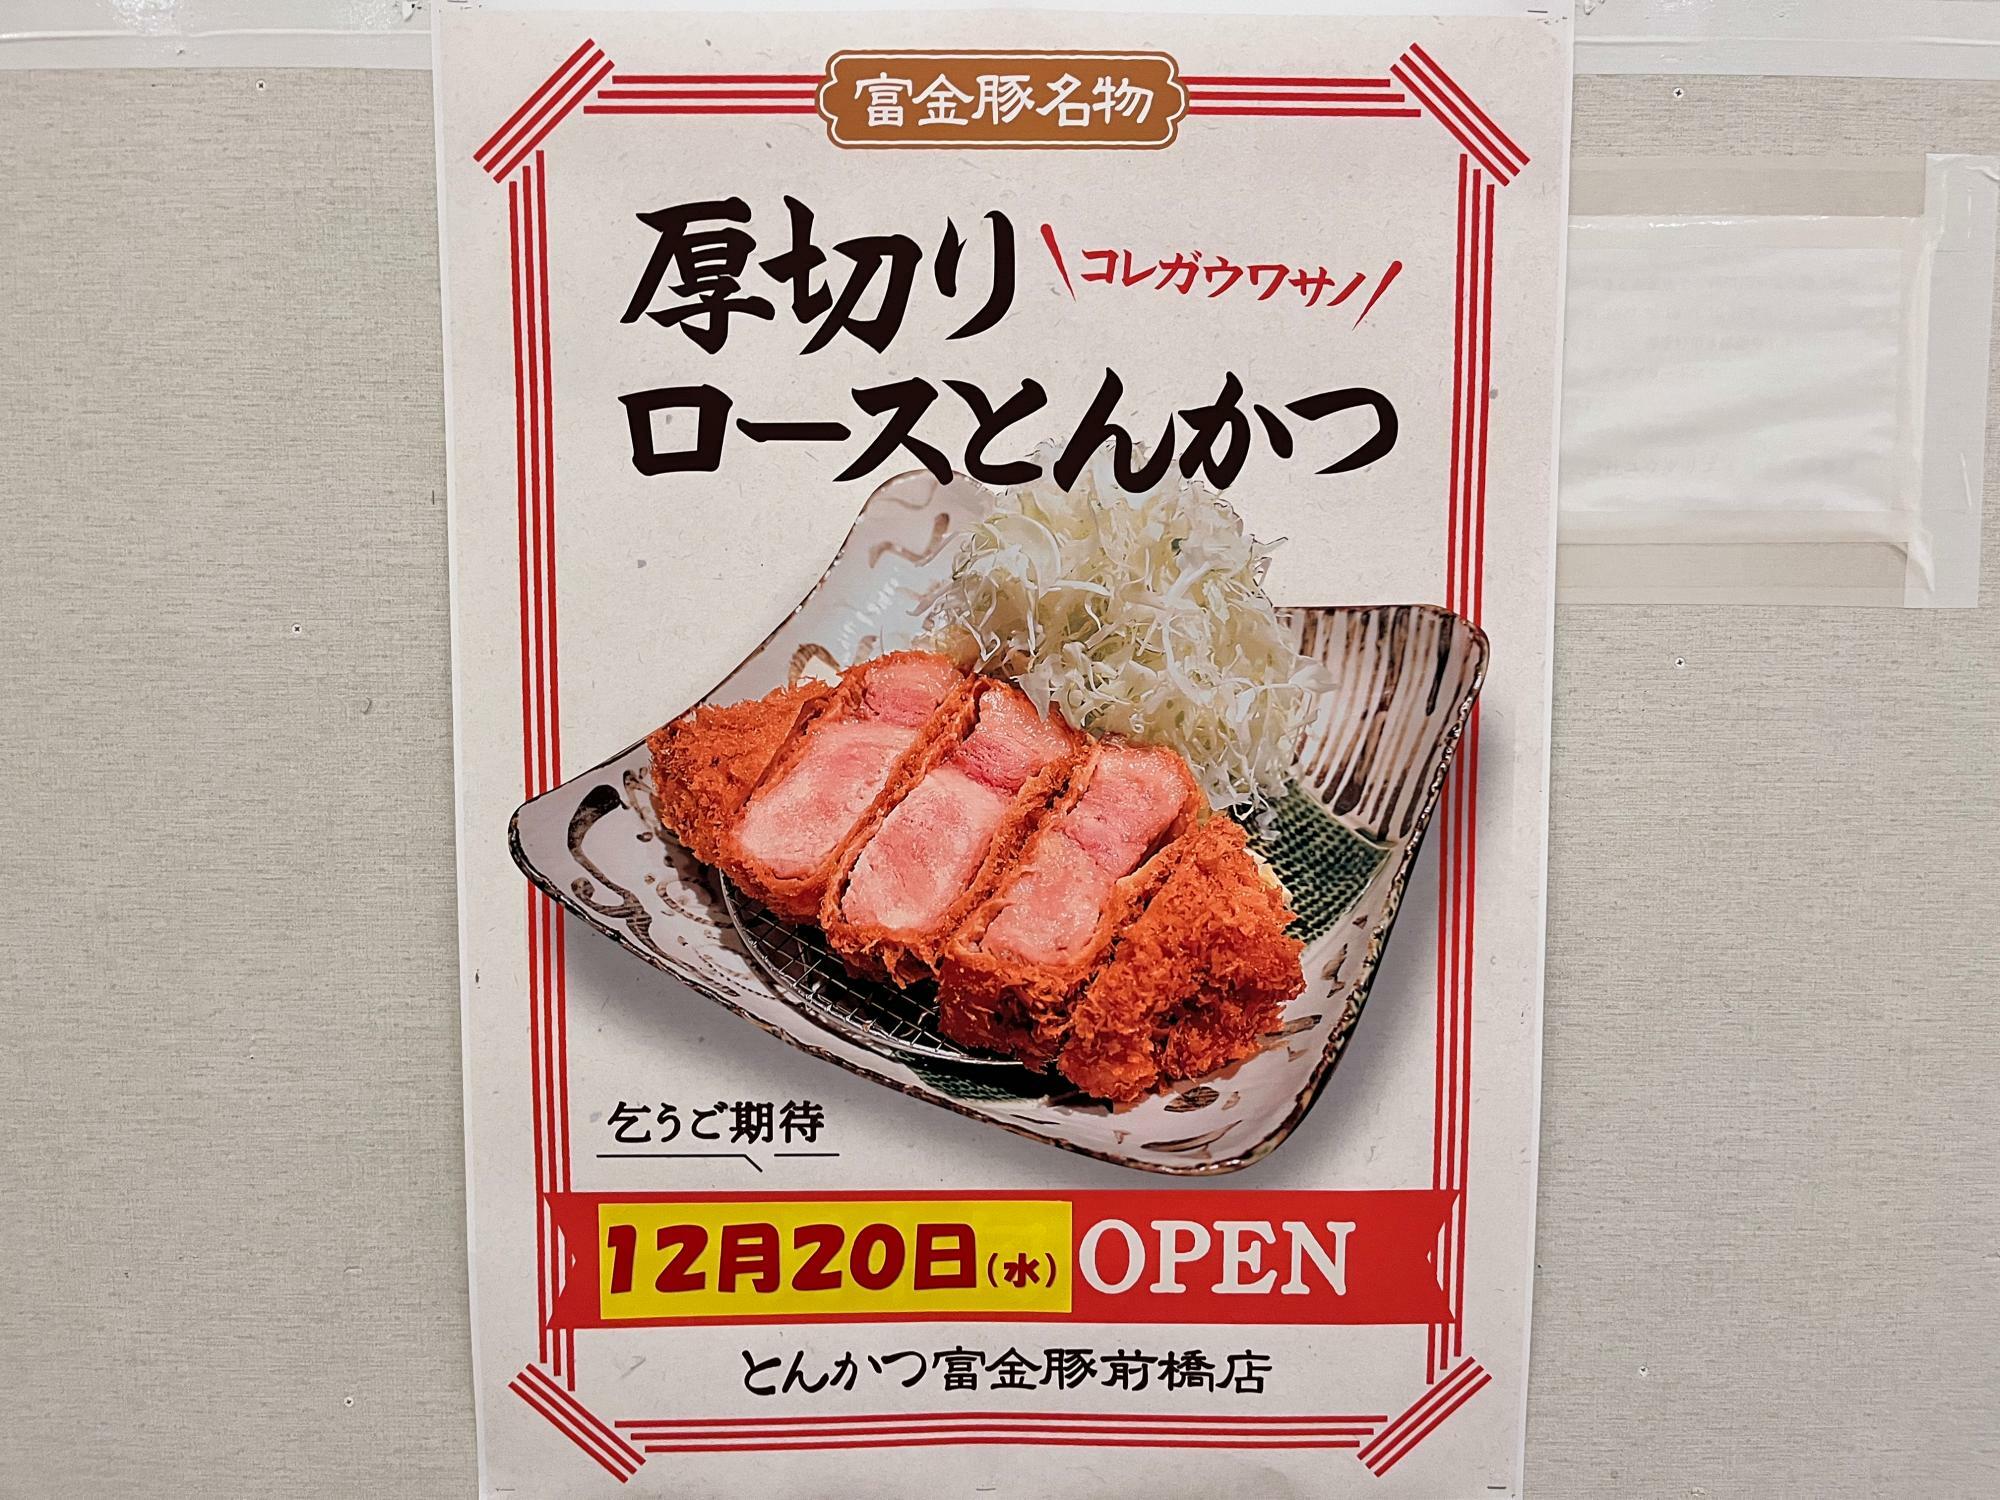 「富金豚 けやきウォーク前橋店」オープン告知のポスター